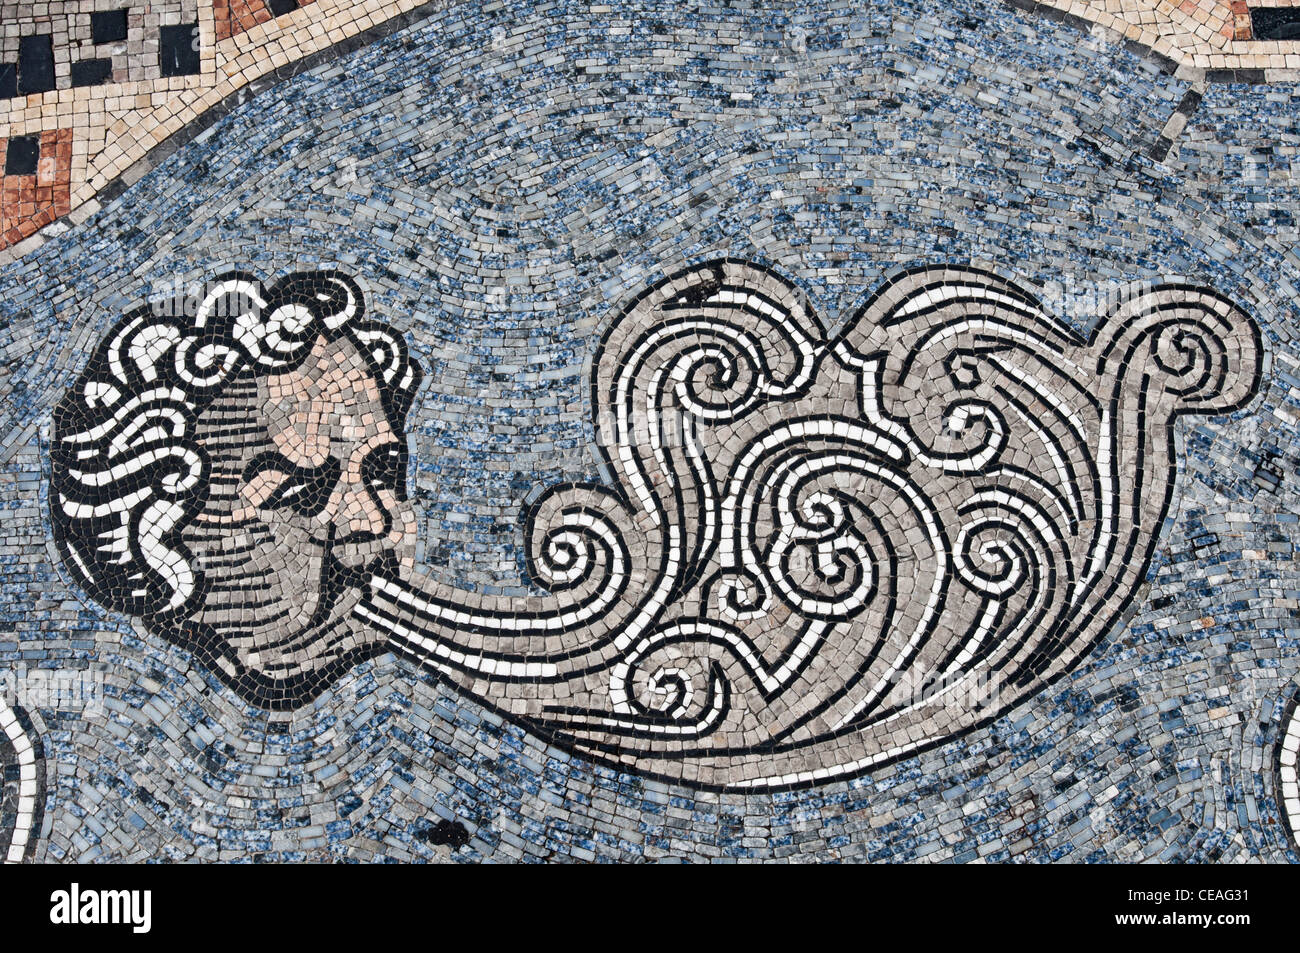 Stein-Mosaik des Zephyr oder Zephyrus Gottes Westwind, St. Augustine, Florida, Vereinigte Staaten, USA, Nordamerika Stockfoto